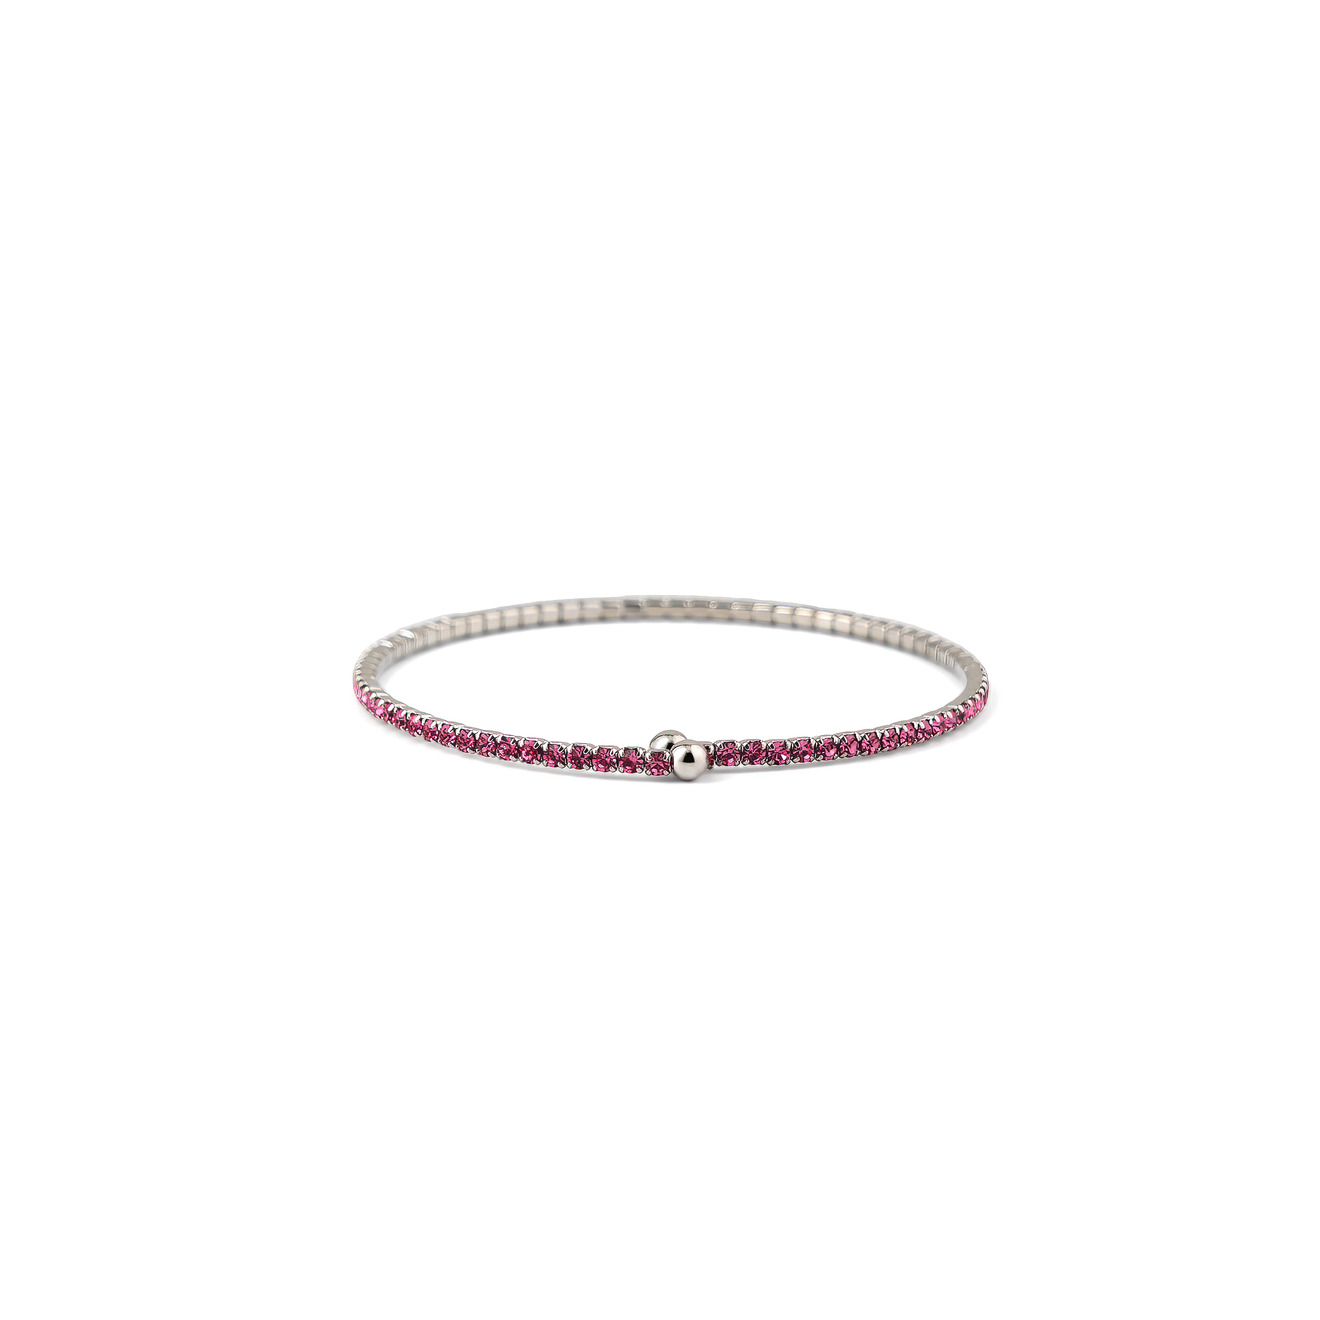 Herald Percy Серебристый браслет с ярко-розовыми кристаллами herald percy серебристый тонкий браслет с белыми кристаллами